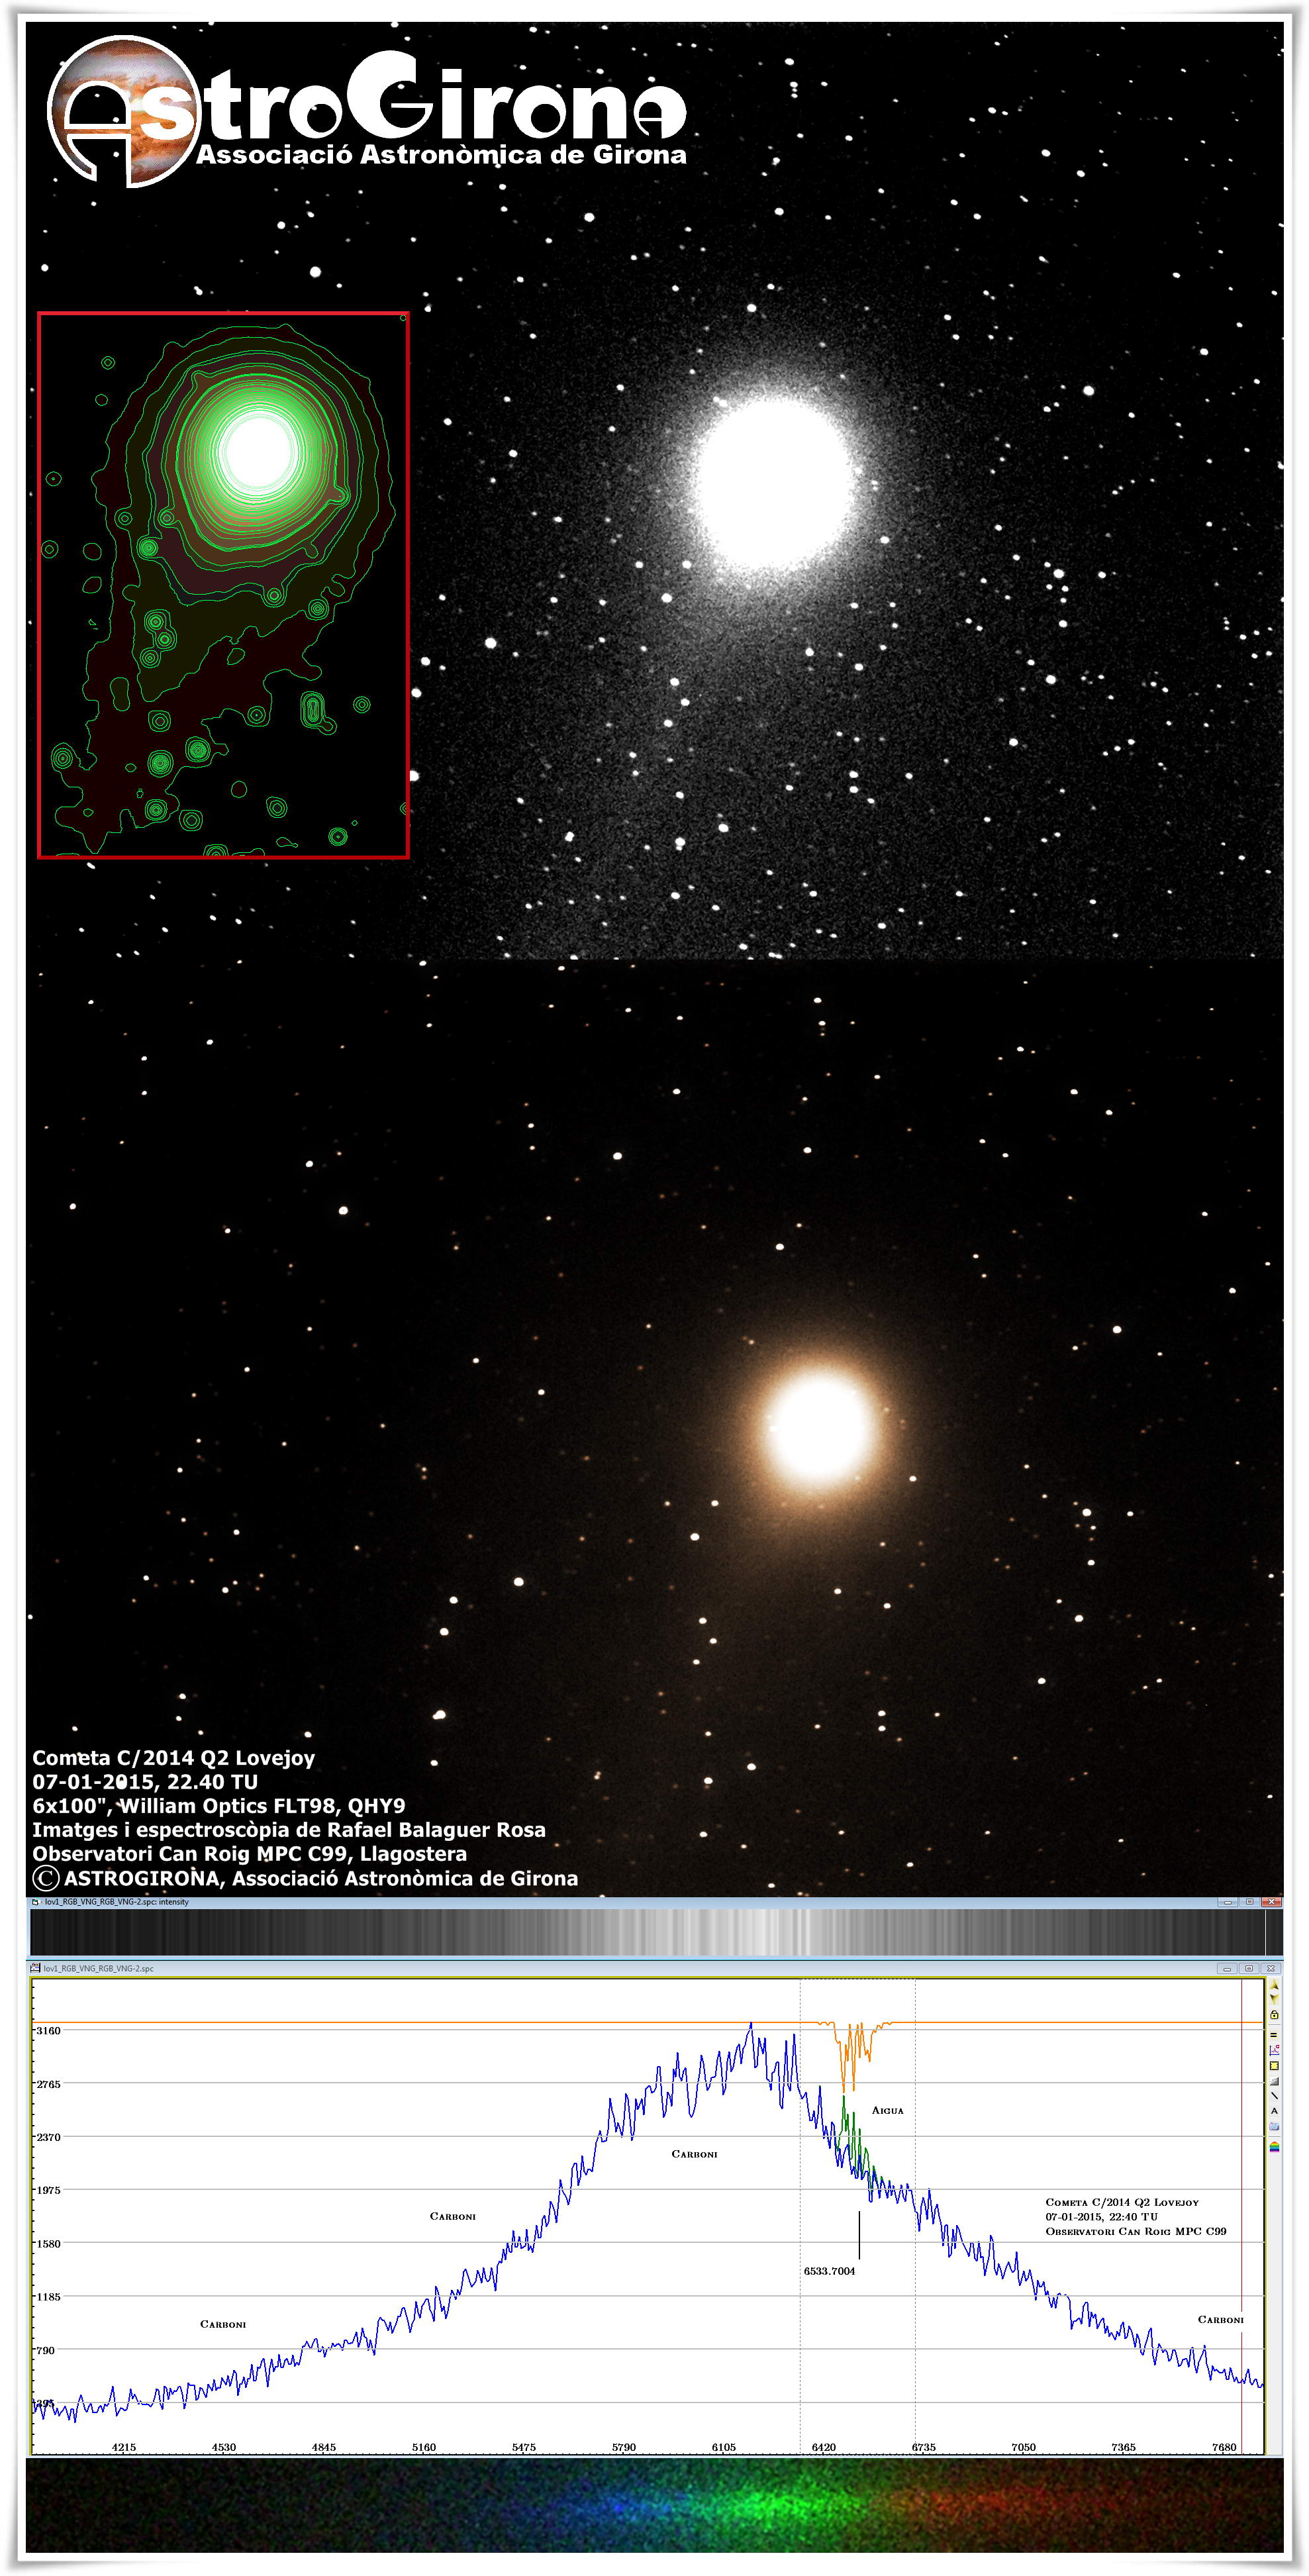 Espectre del cometa c/2014 Q2 Lovejoy, per Rafael Balaguer Rosa